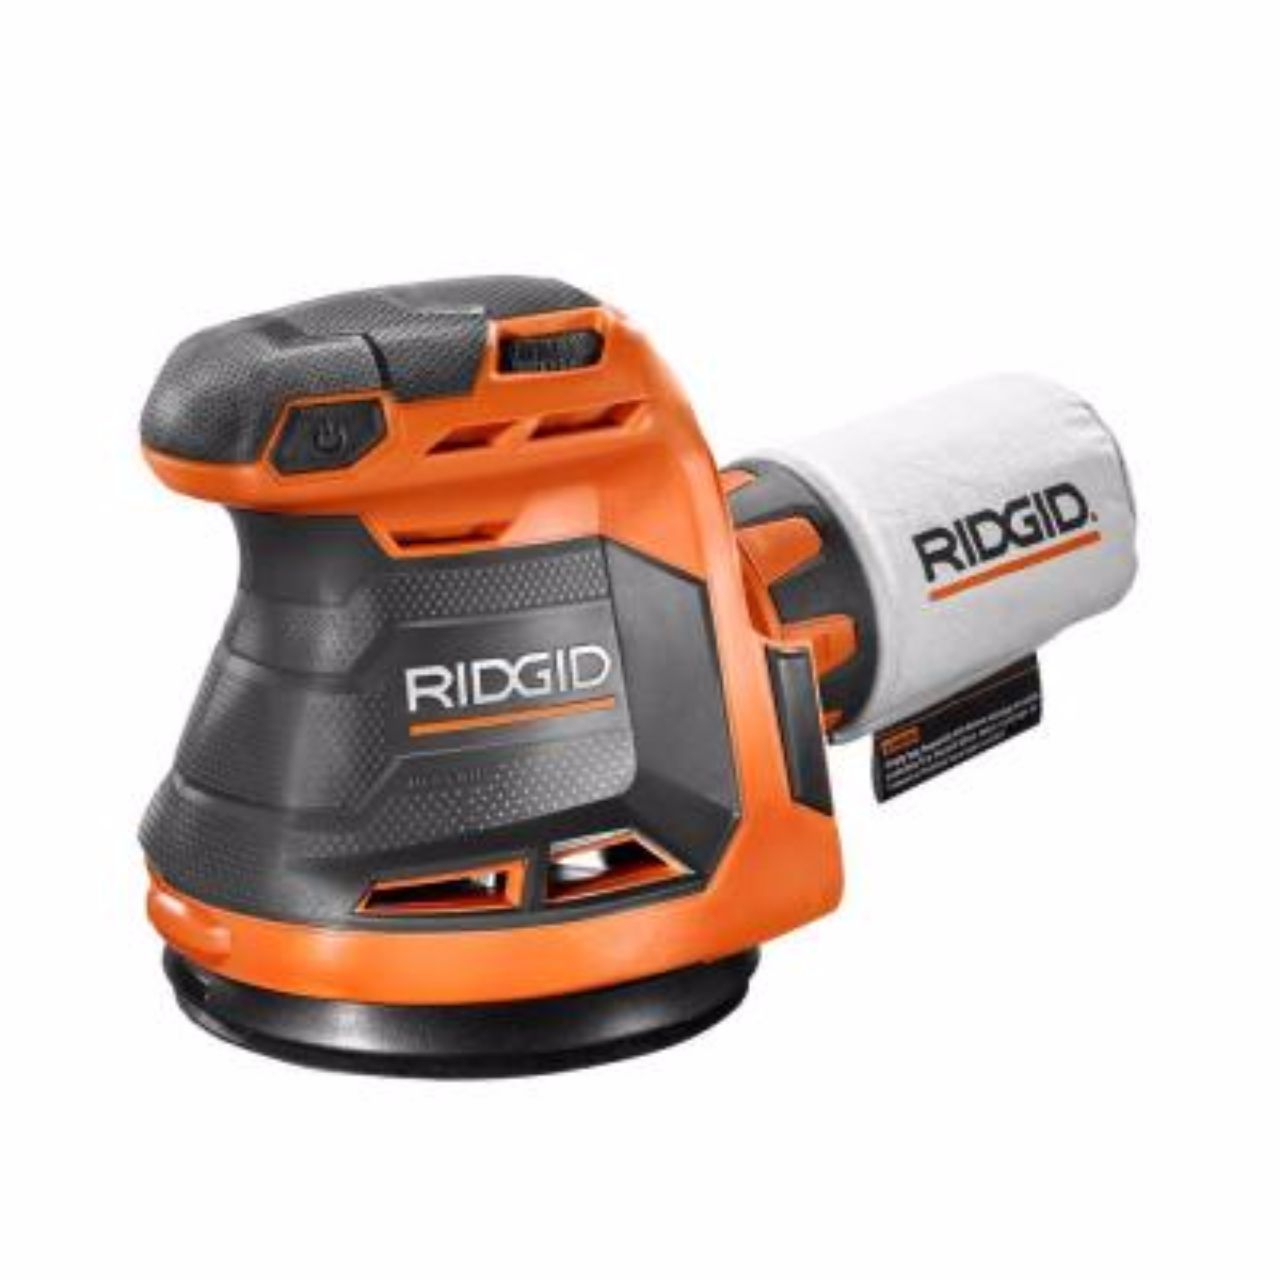 Ridgid R8606B GEN5X 18V Orbit Cordless Sander Review: Product Description, Pros, Cons, and Verdict